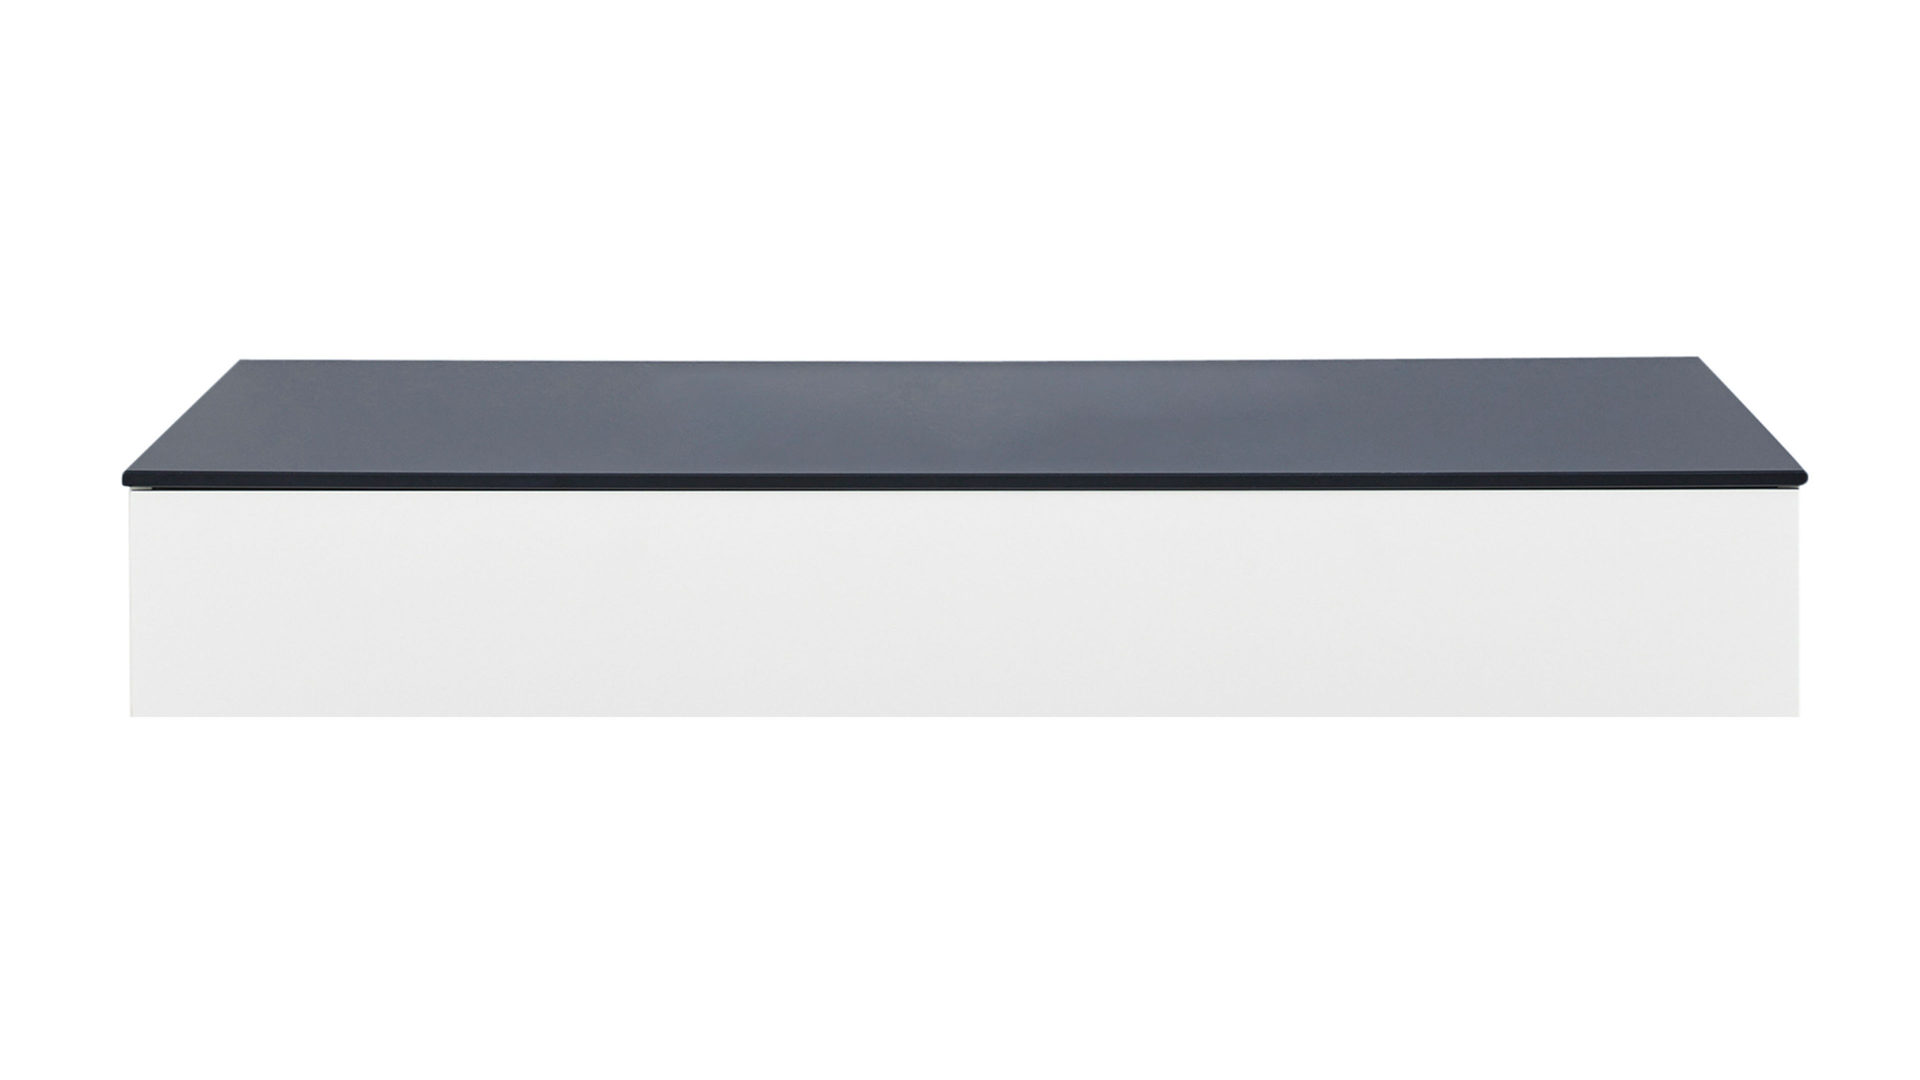 Tischplatte Interliving aus Stein in Schwarz Interliving Bad Serie 3701 – Waschtischplatte schwarzes Qsolid – Länge ca. 120 cm